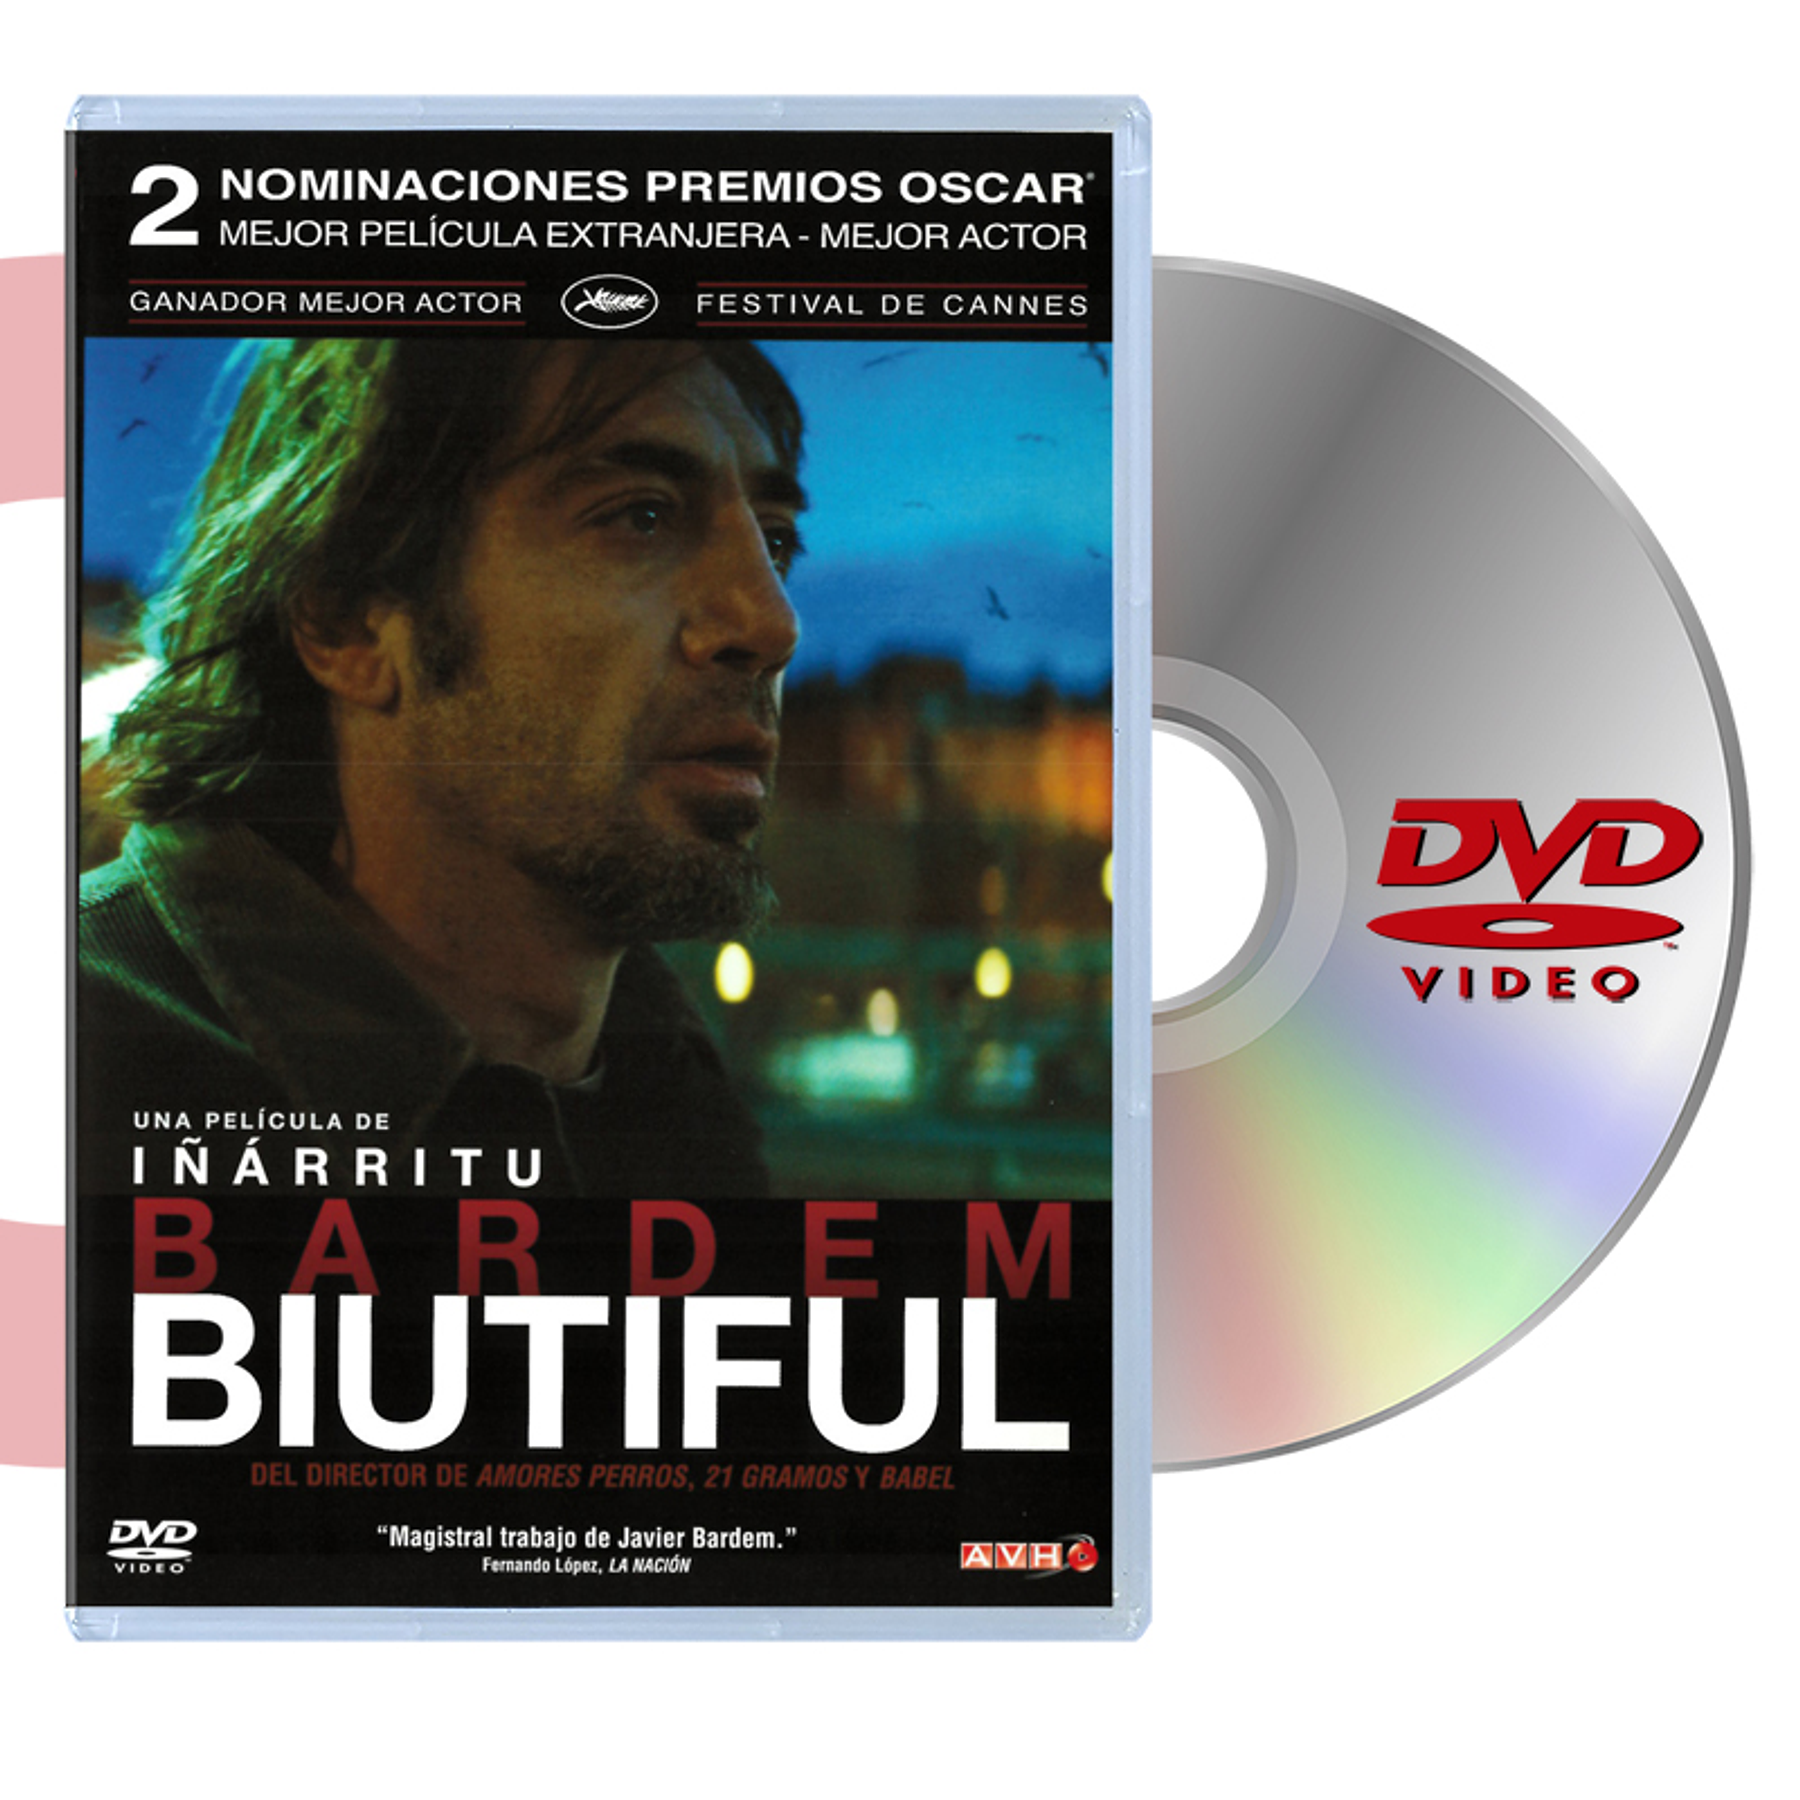 DVD BIUTIFUL